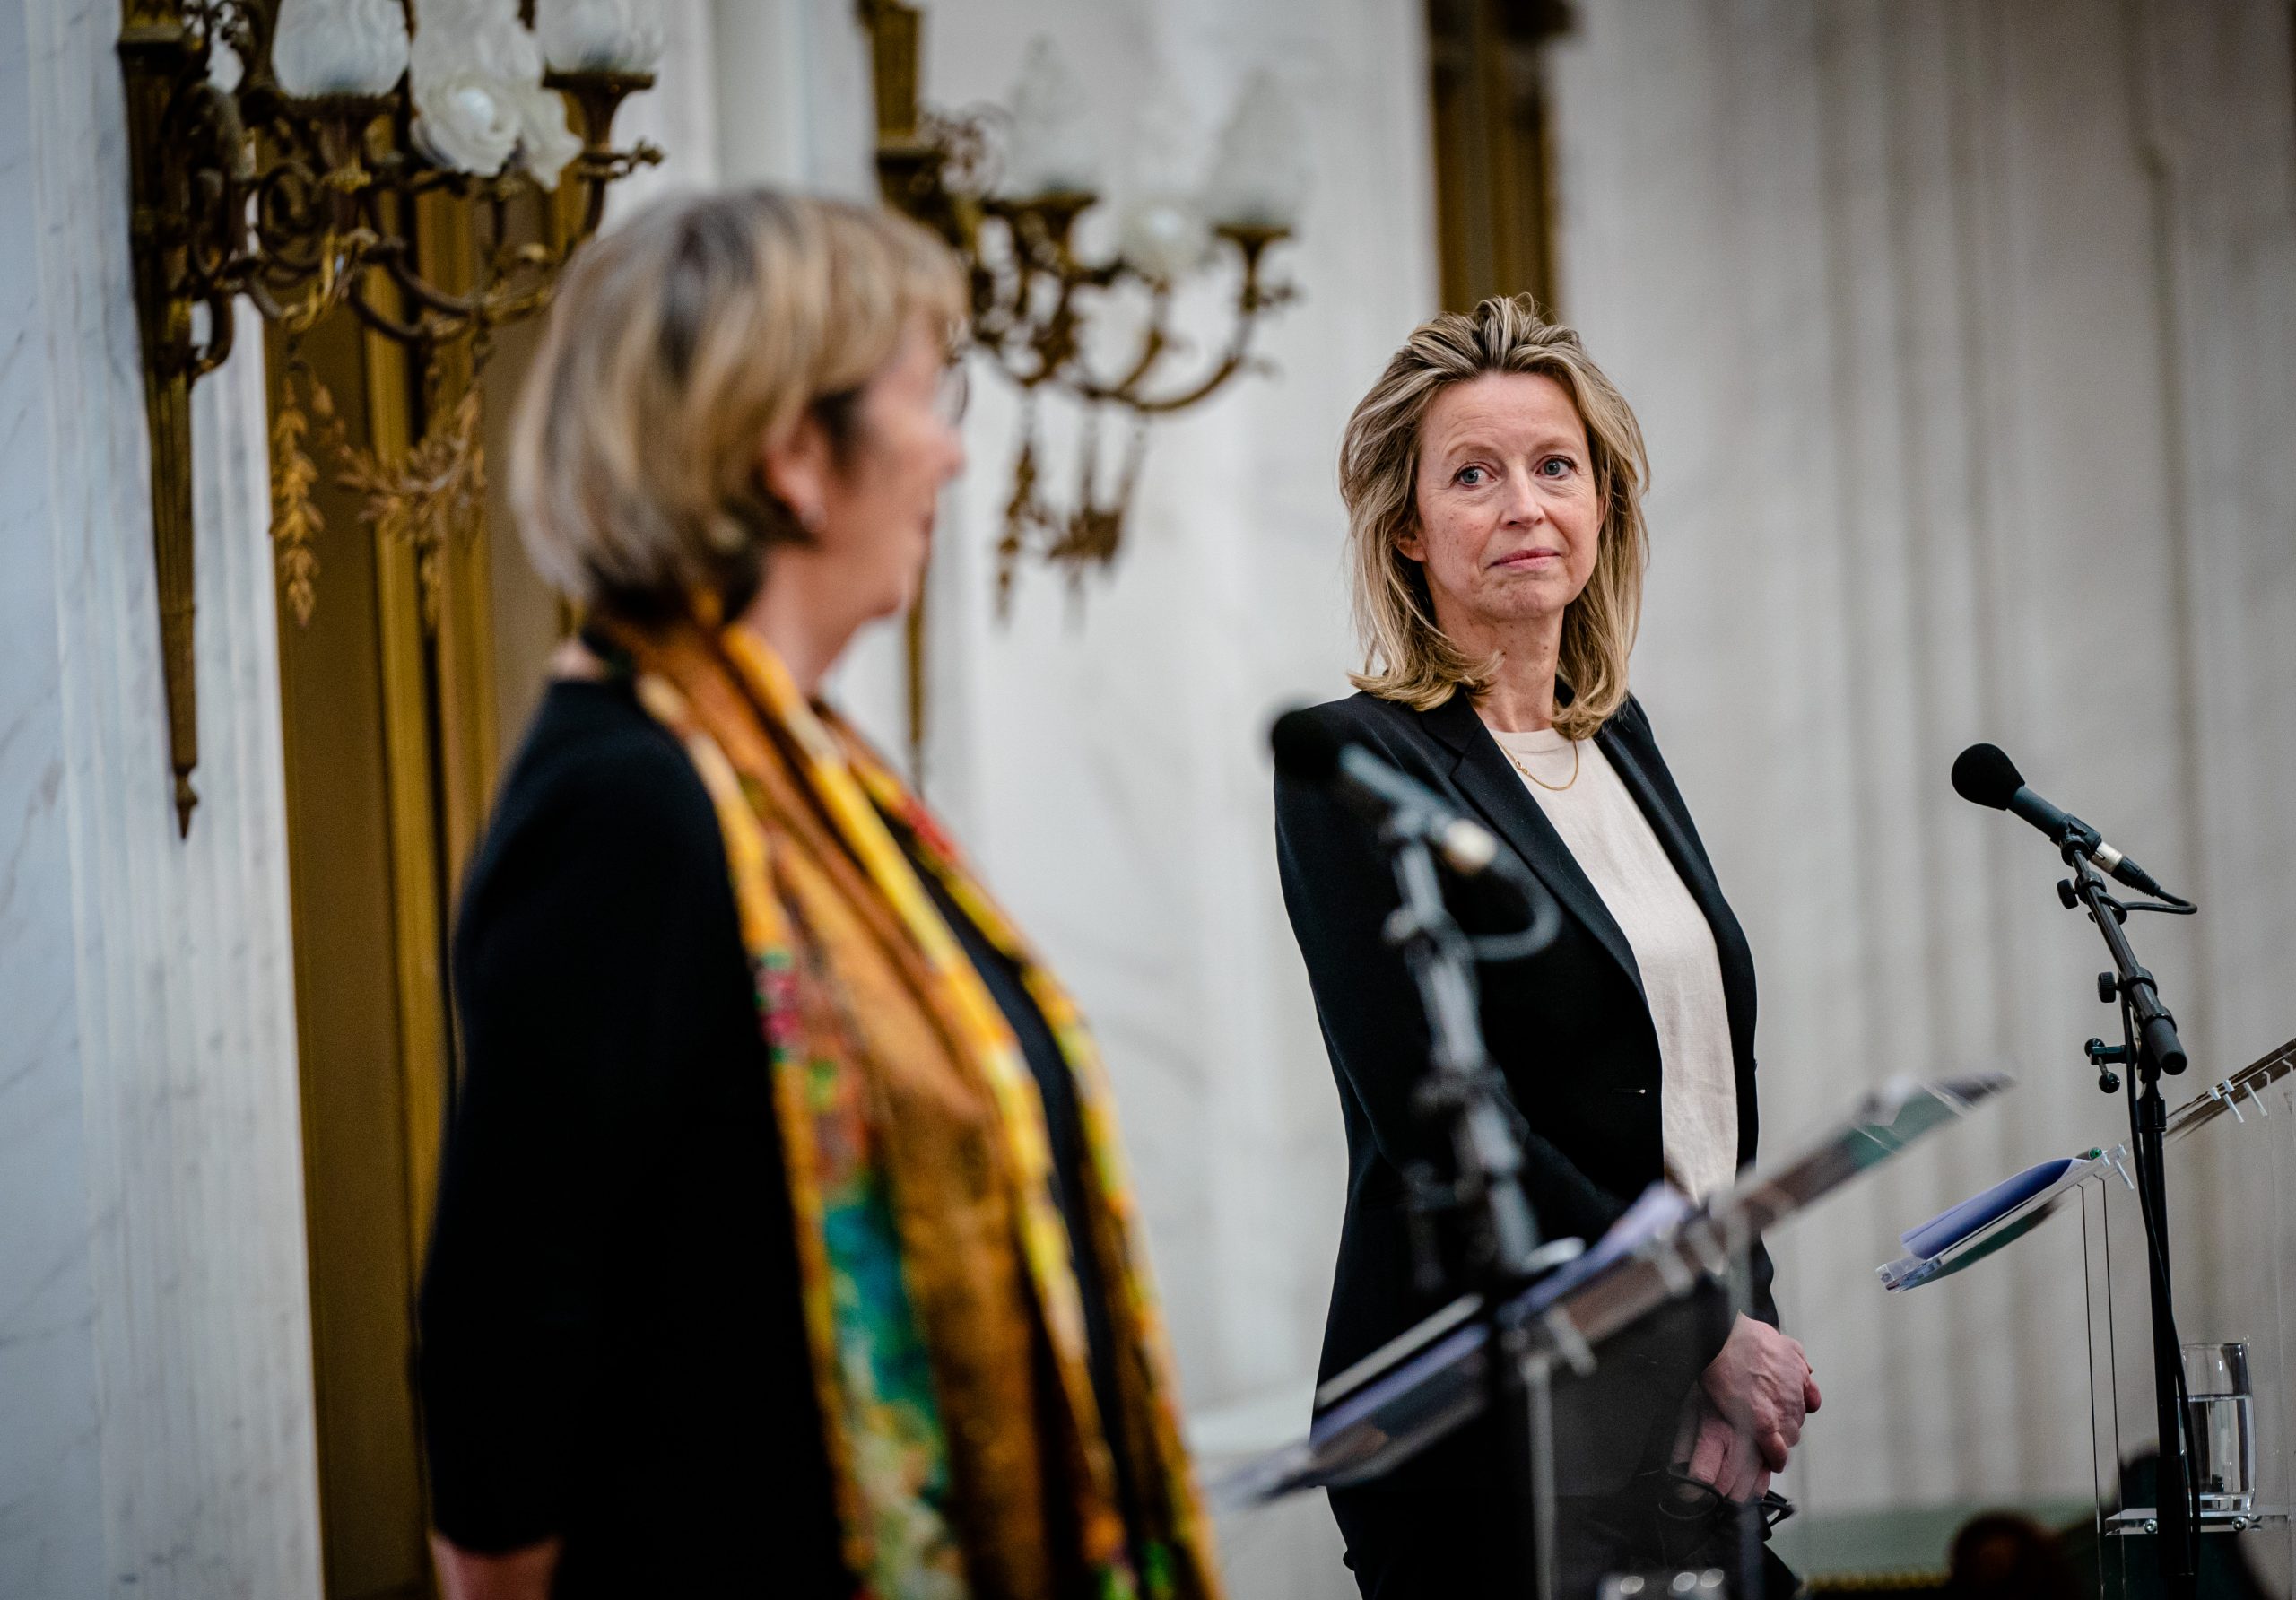 De voormalige verkenners Annemarie Jorritsma (VVD) en Kajsa Ollongren (D66) tijdens een persconferentie.